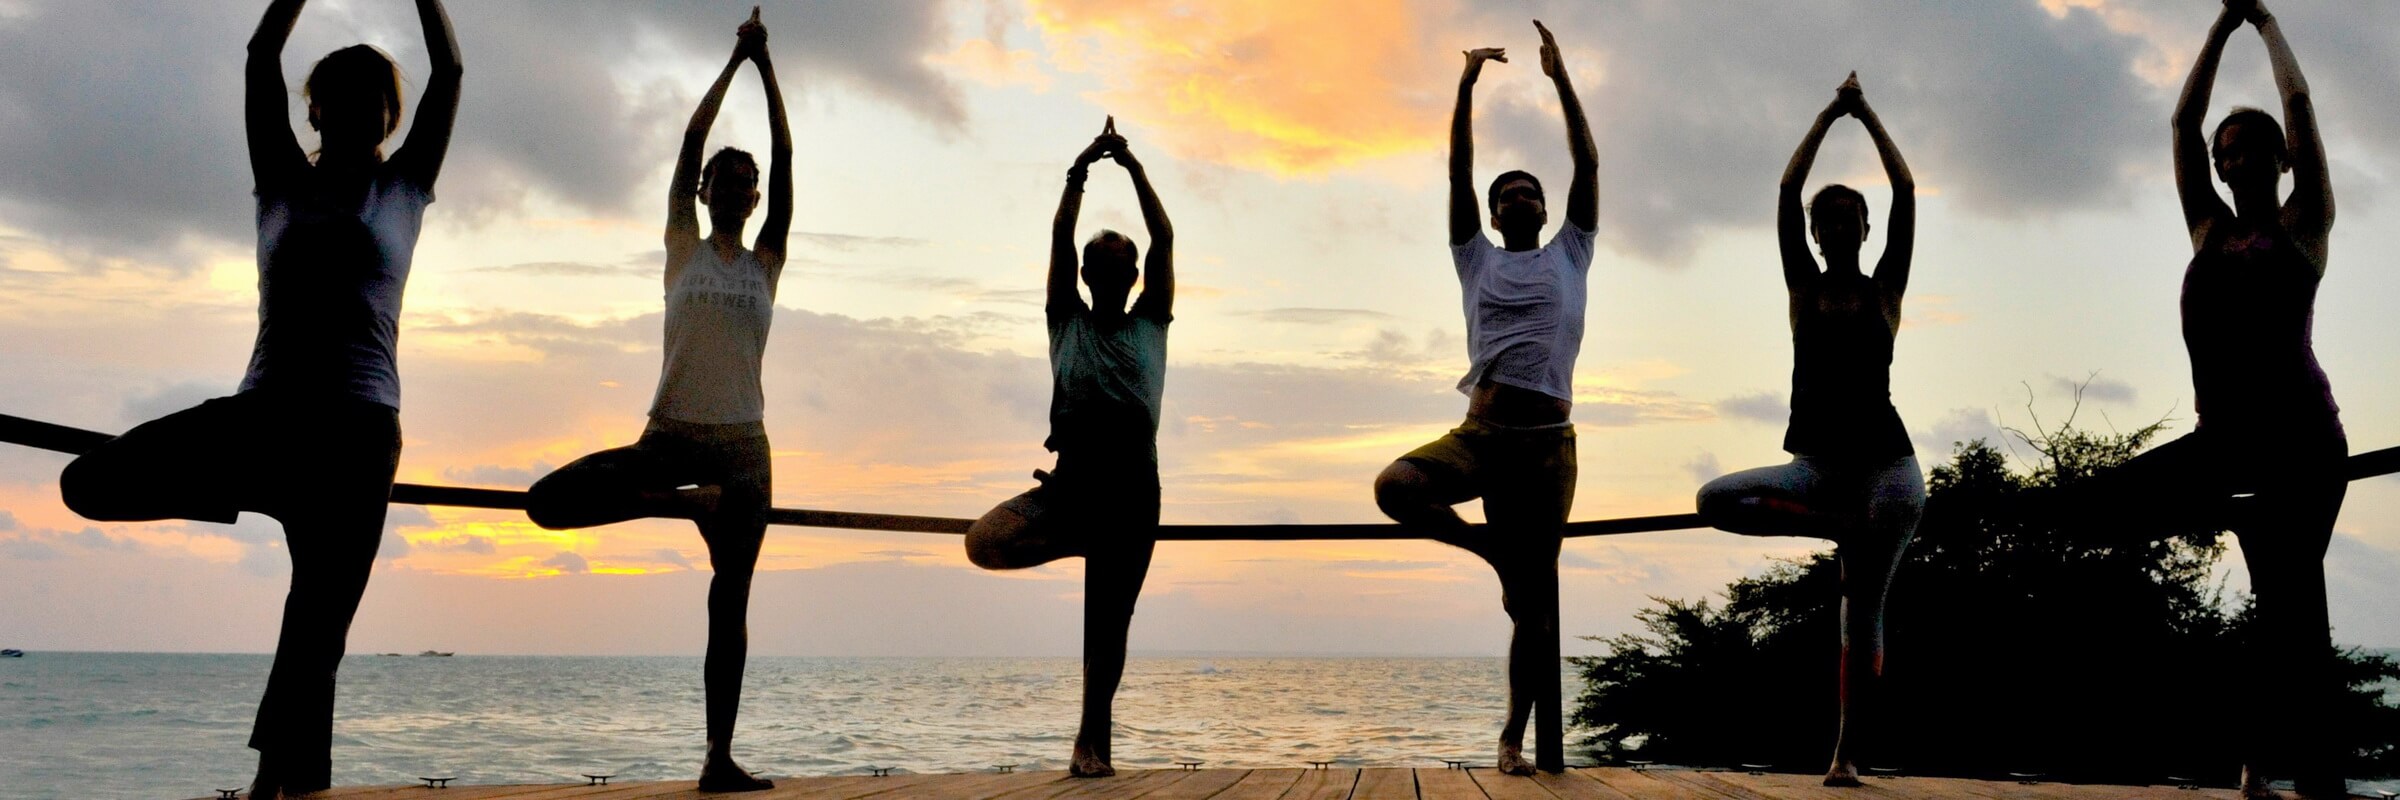 Das Virgin Cocoa bietet ein vielseitiges Yoga-Angebot aus Vinyasa Yoga bis hin zum entspannenden Yin Yoga, es können auch private Yogastunden gebucht werden.